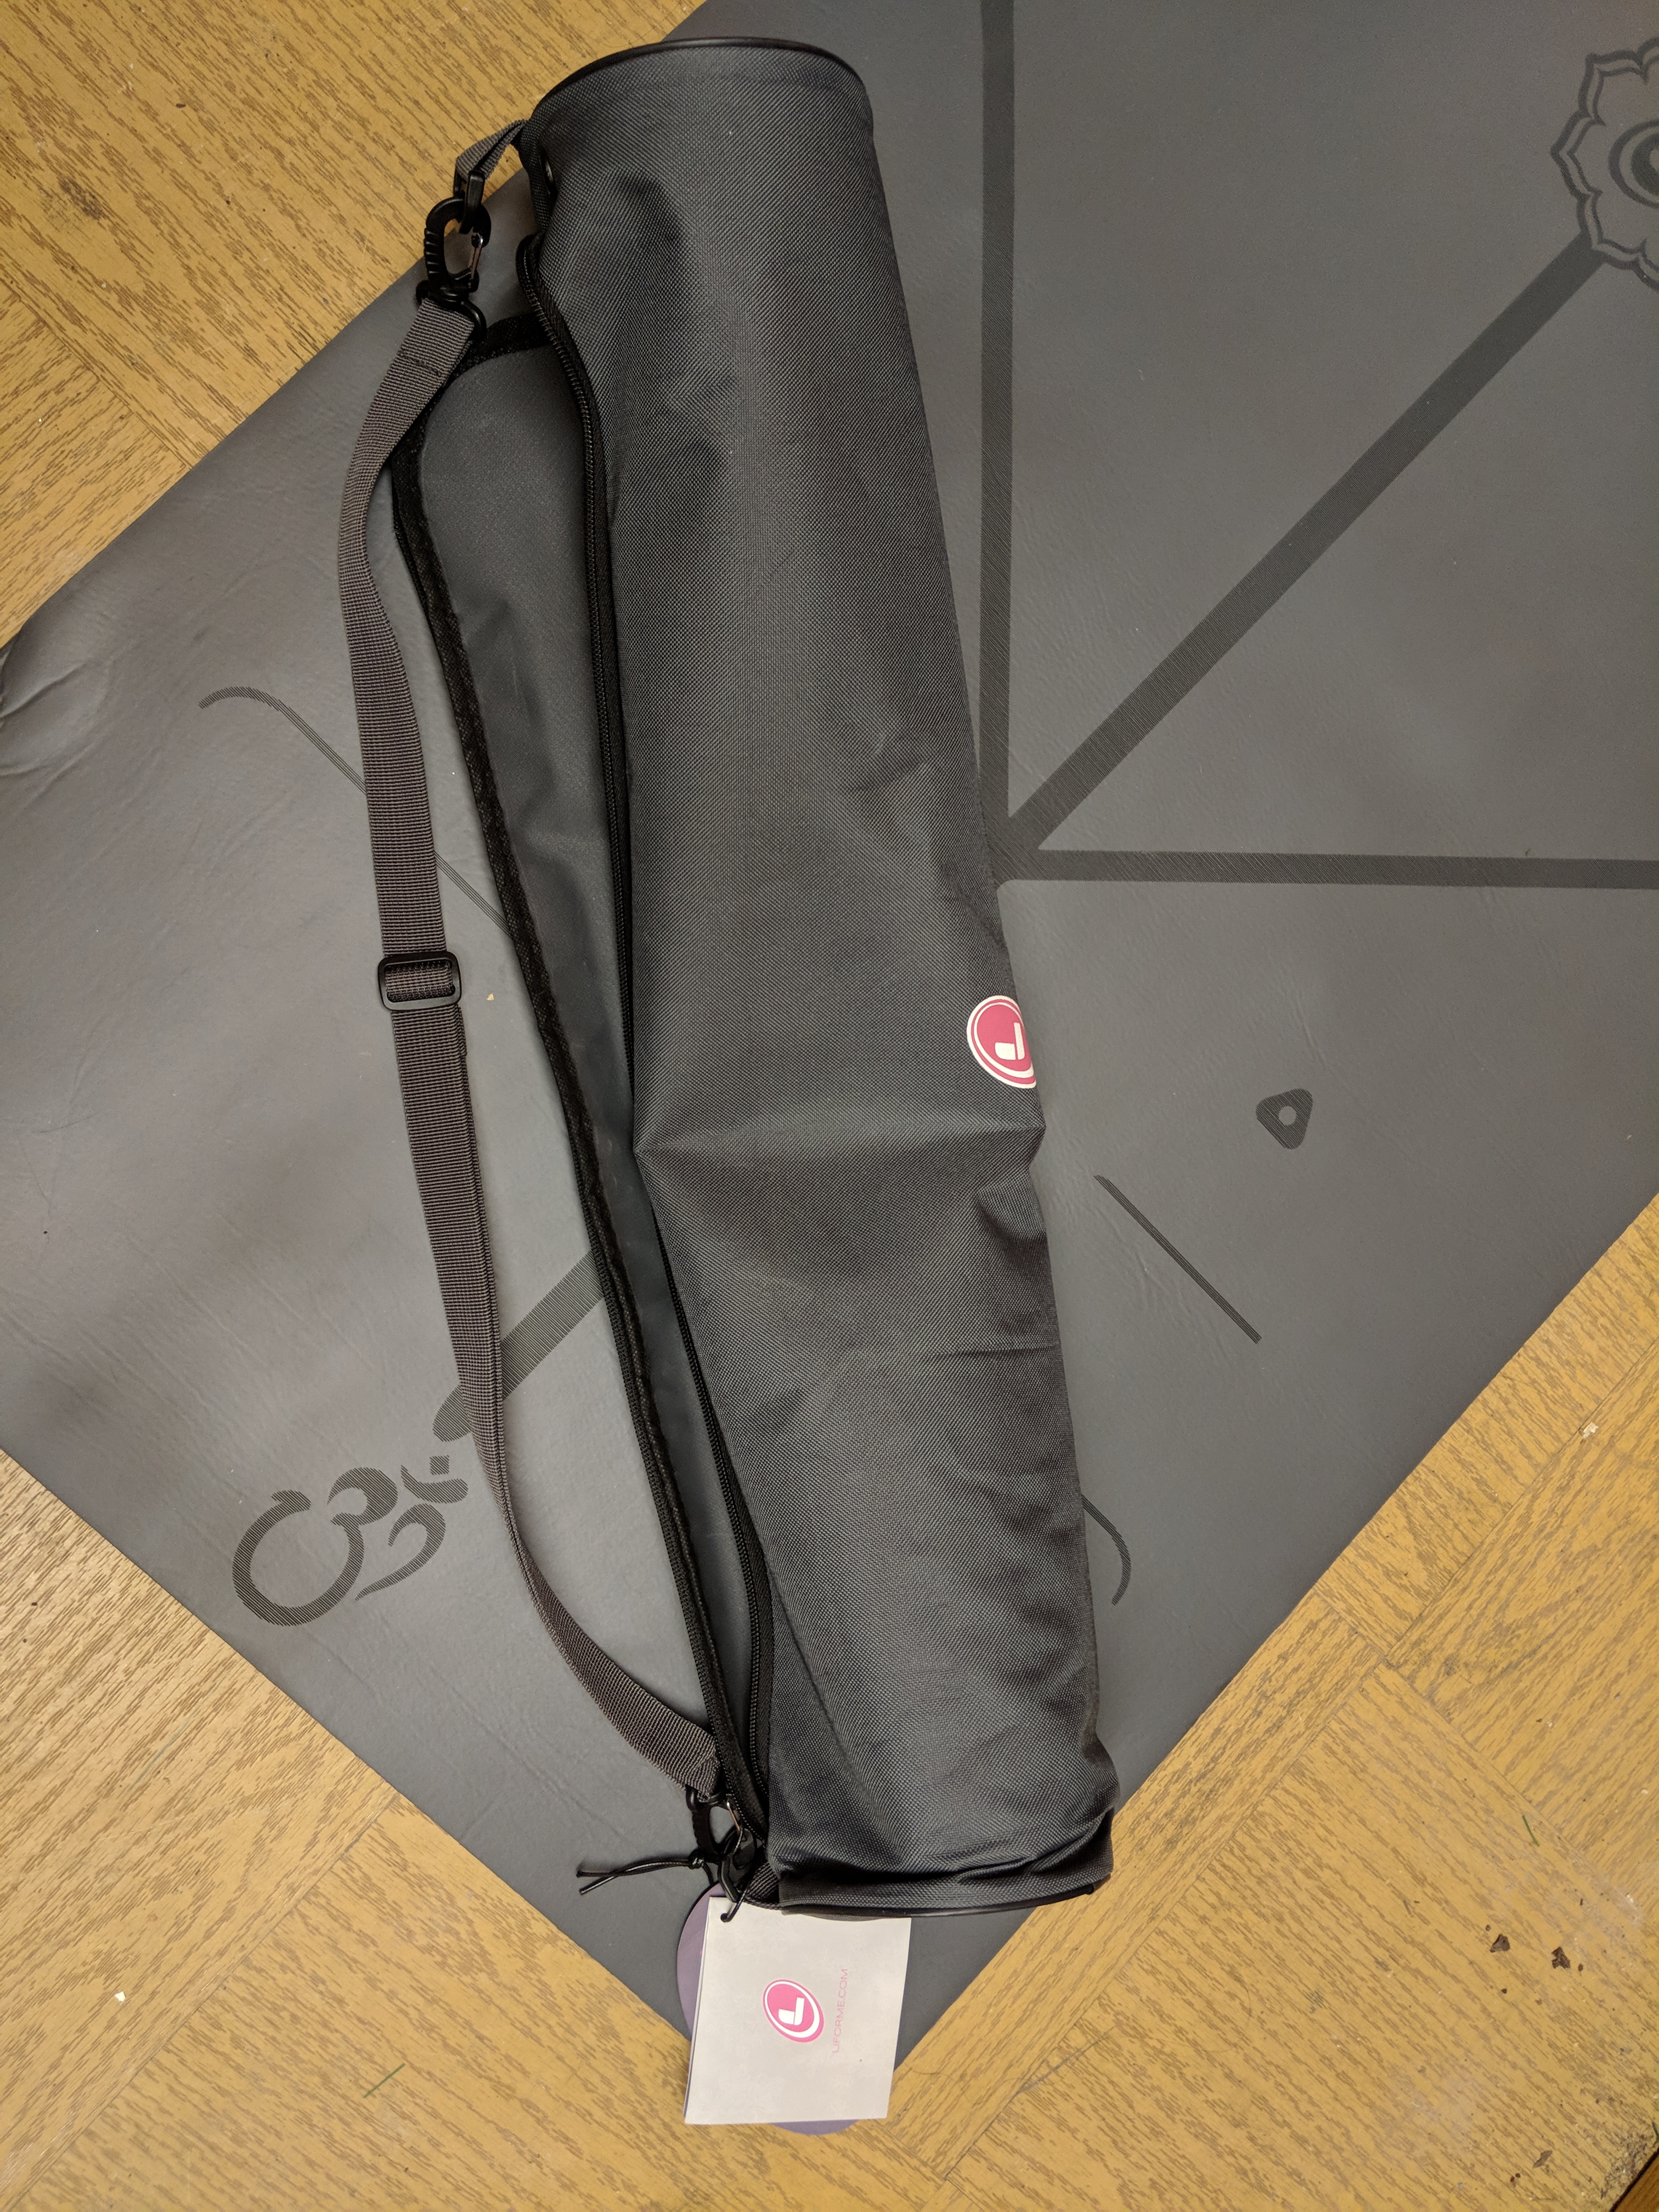 Liforme Yoga Mat Bag